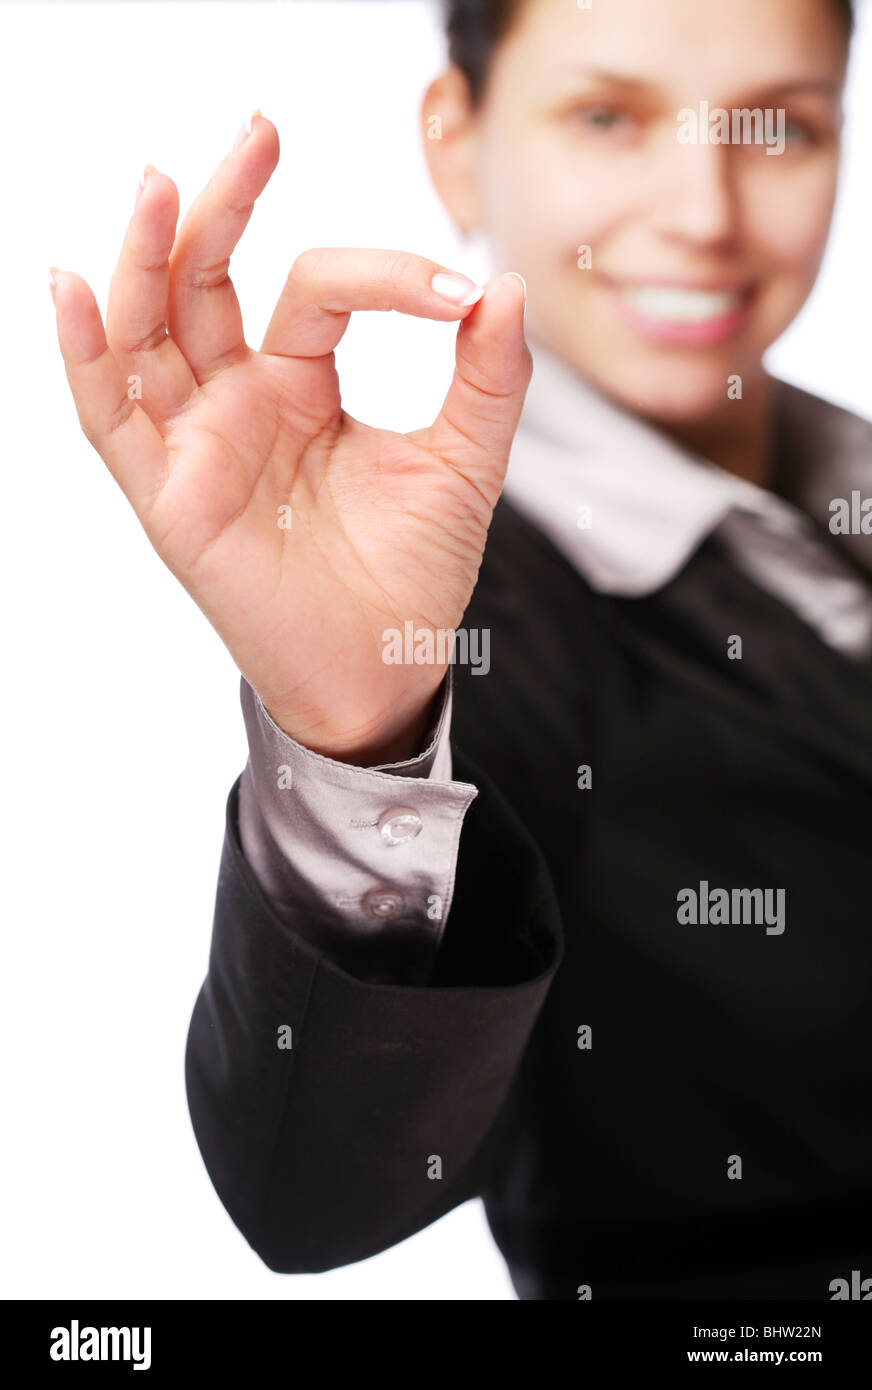 Business Woman fait signe "Ok" à la main. Isolé sur fond blanc Banque D'Images